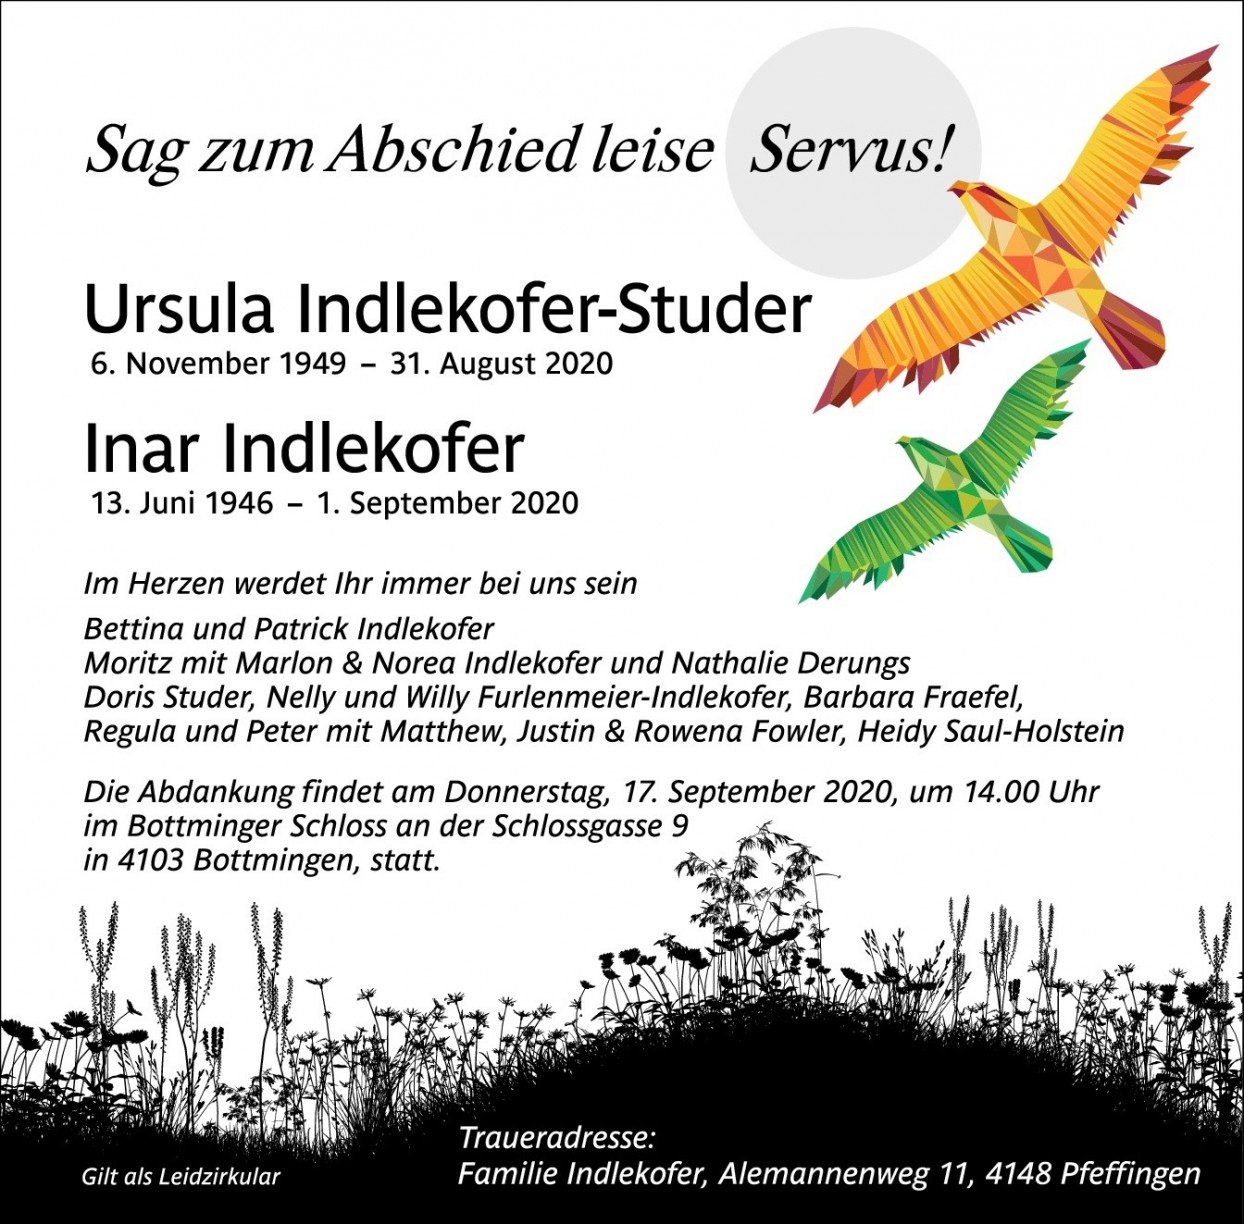 Ursula Indlekofer-Studer